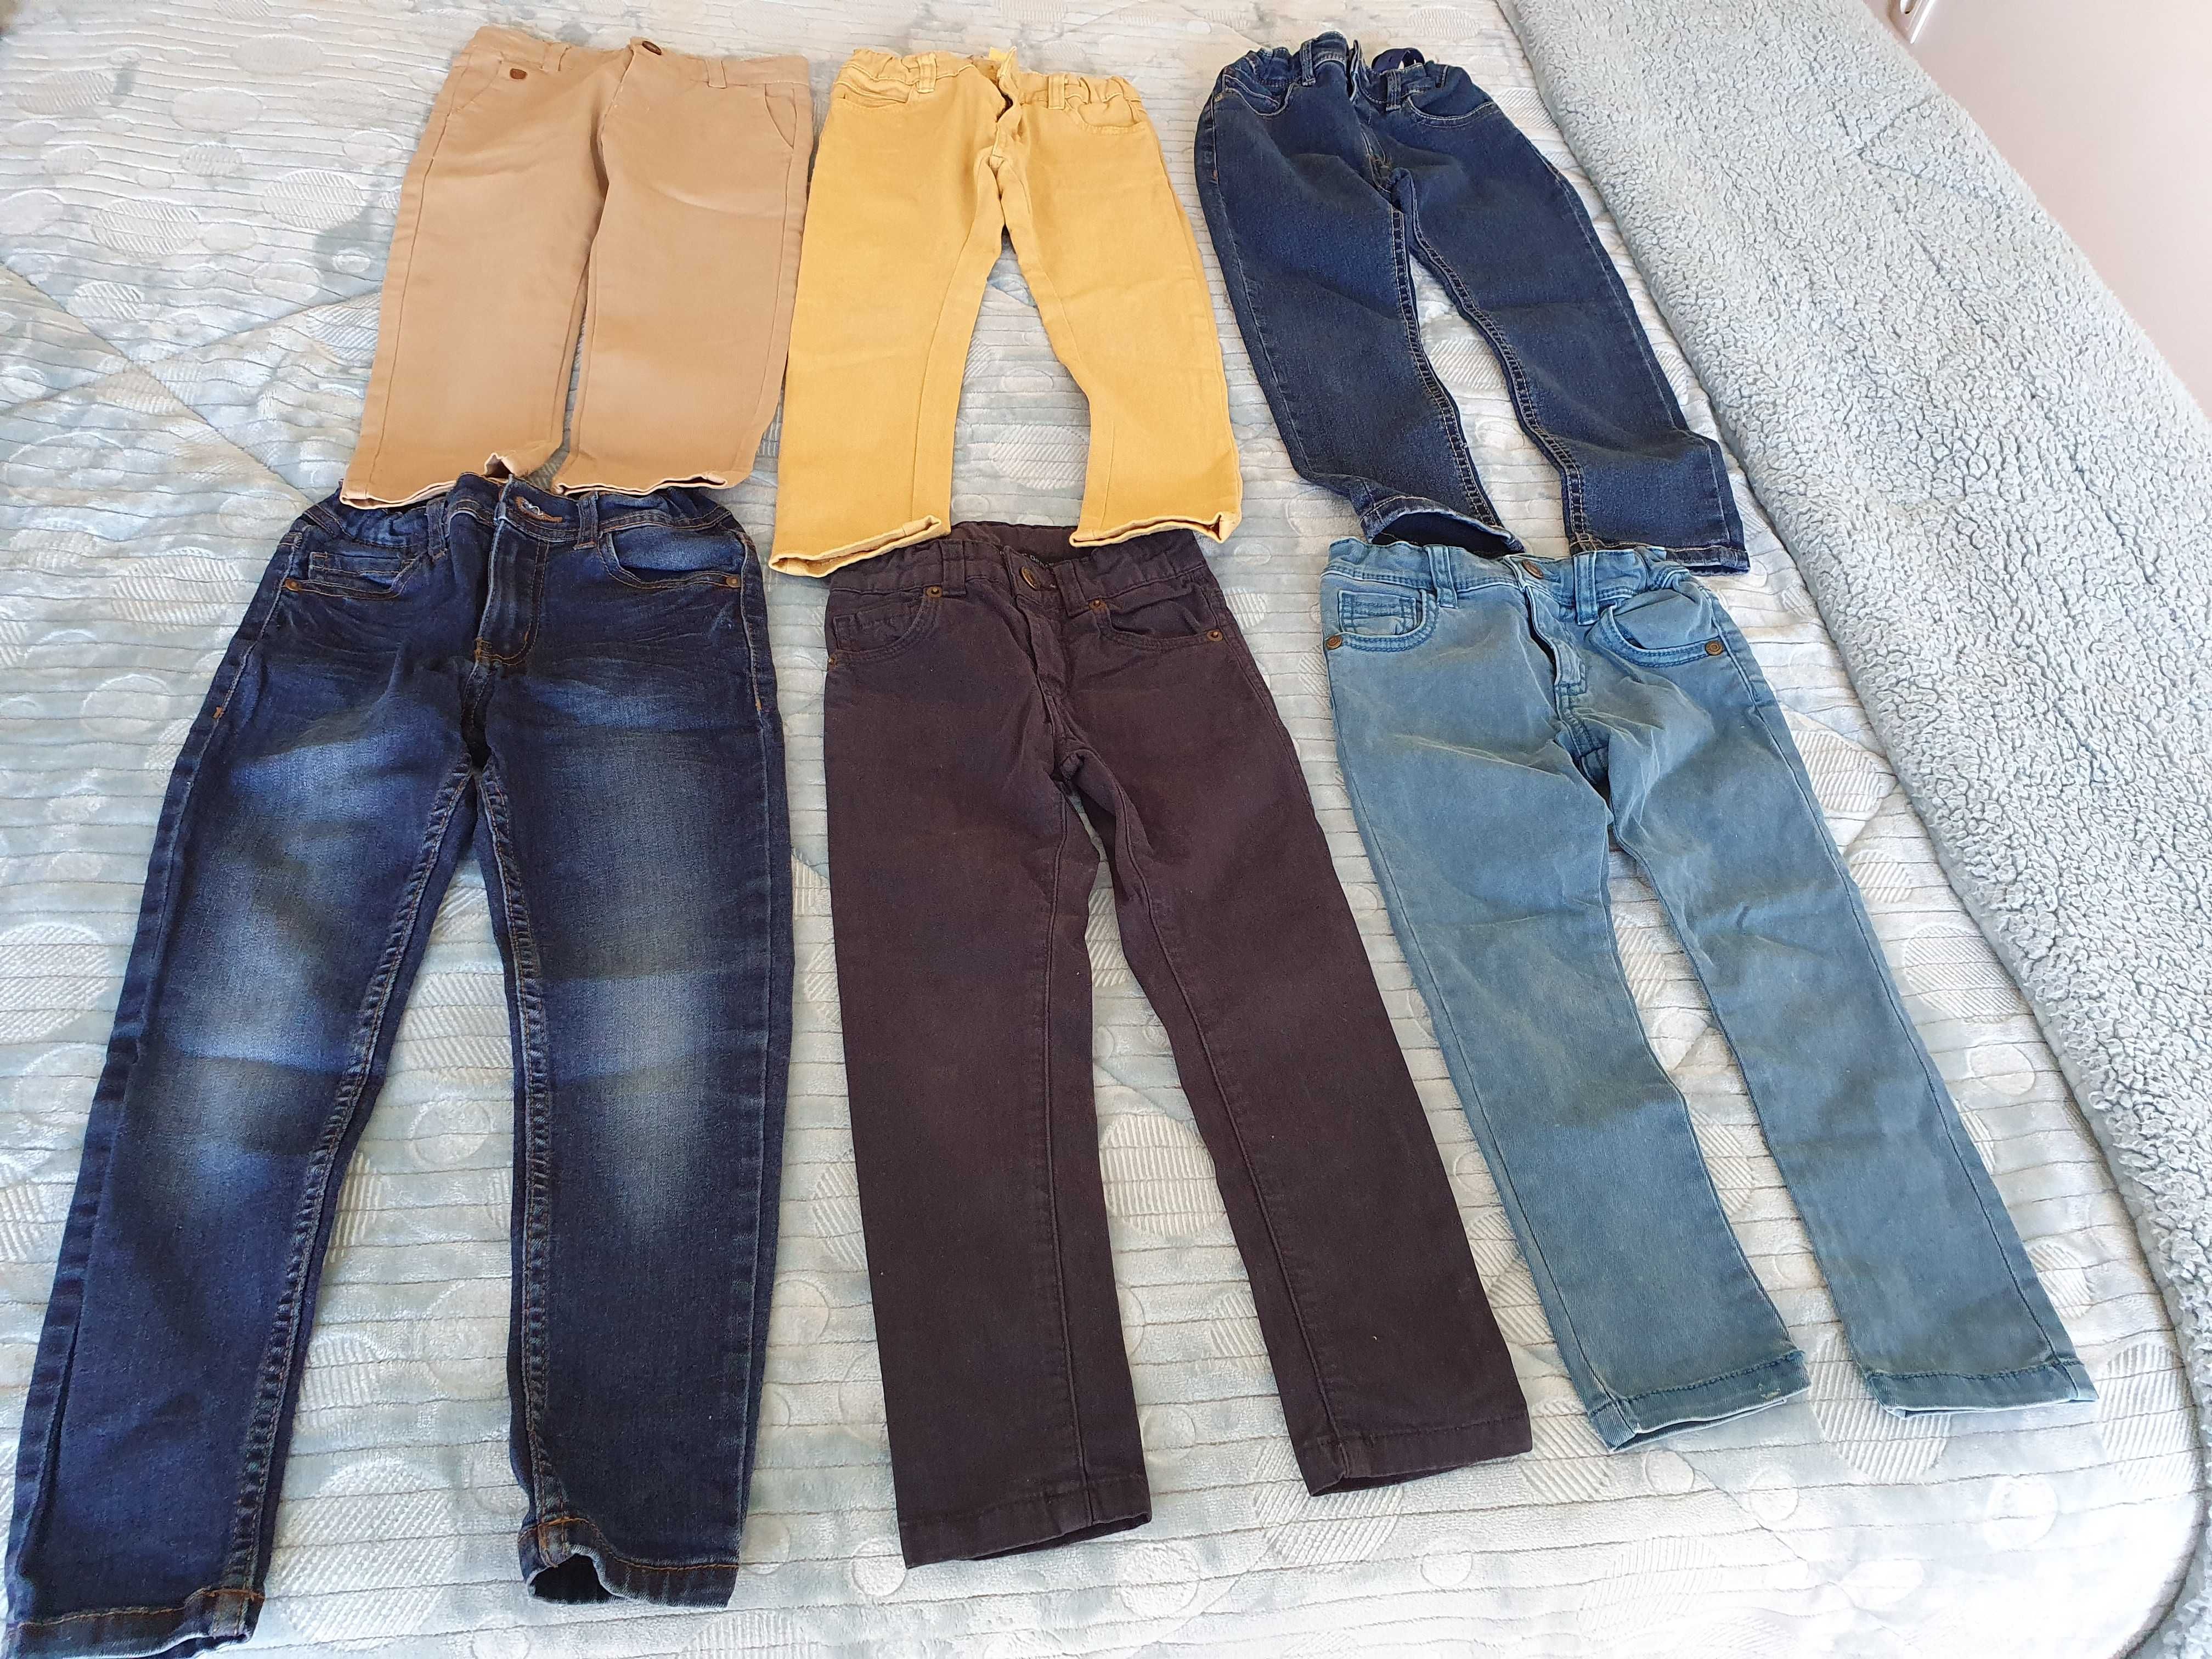 Quatro(duas vendidas) pares de calças originais de marca para menino